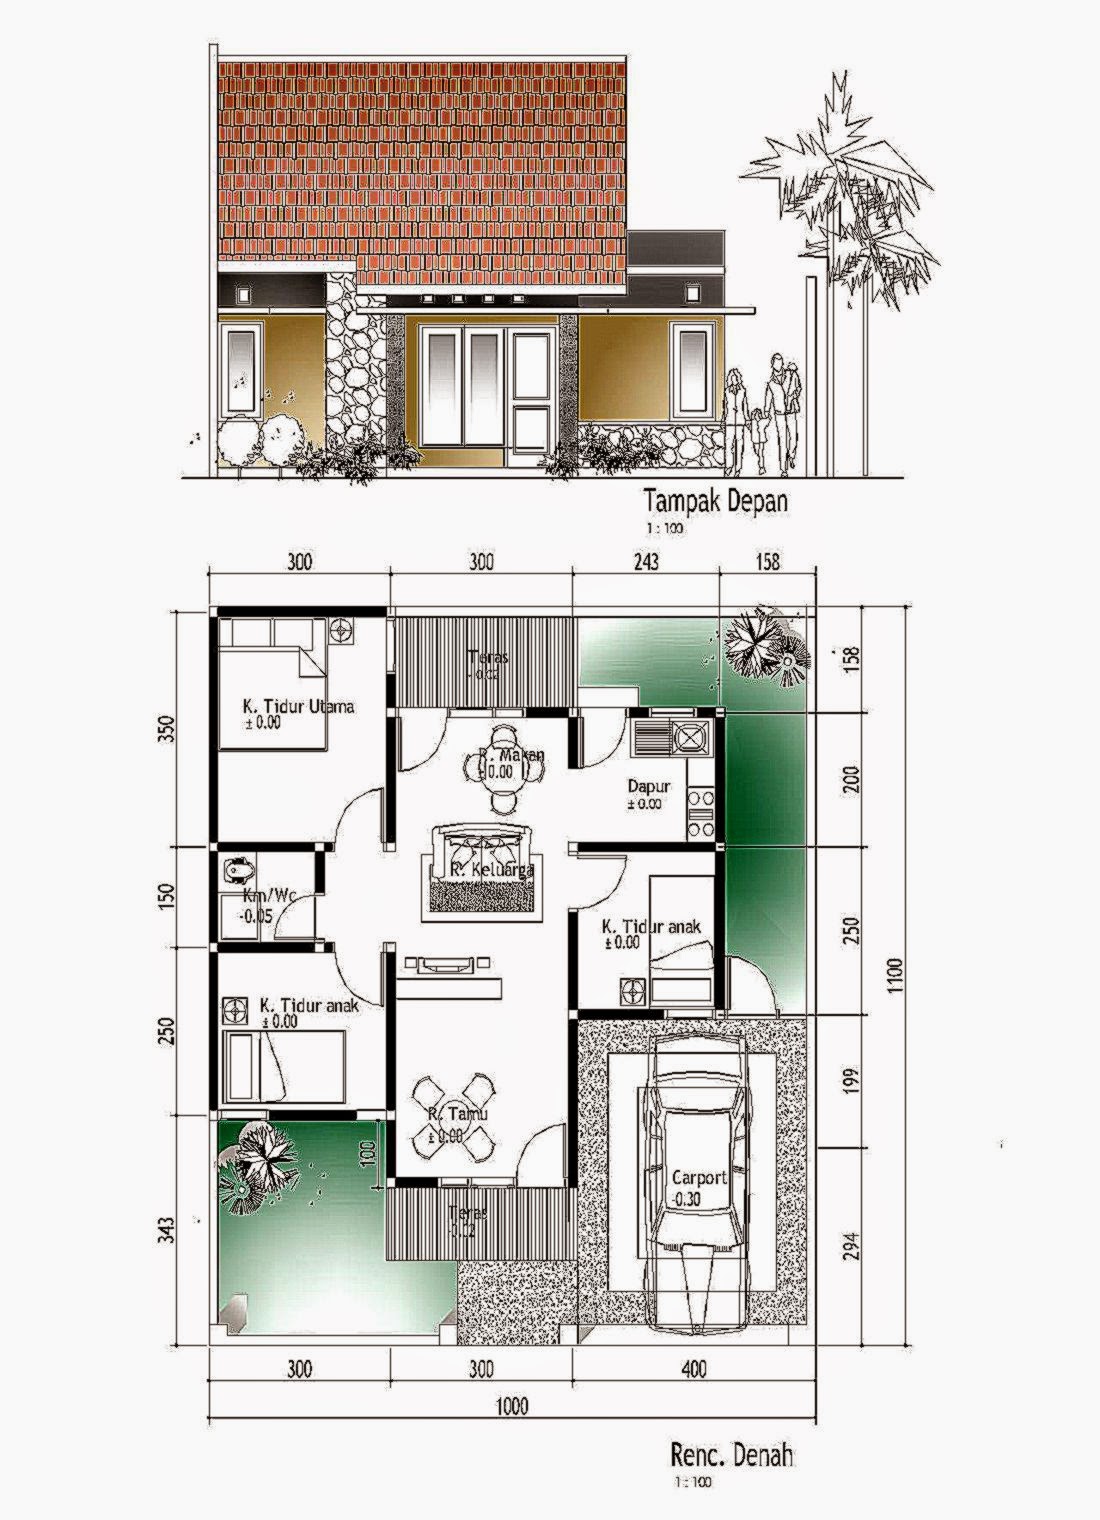 108 Gambar Sketsa Rumah Minimalis Sederhana Gambar Desain Rumah